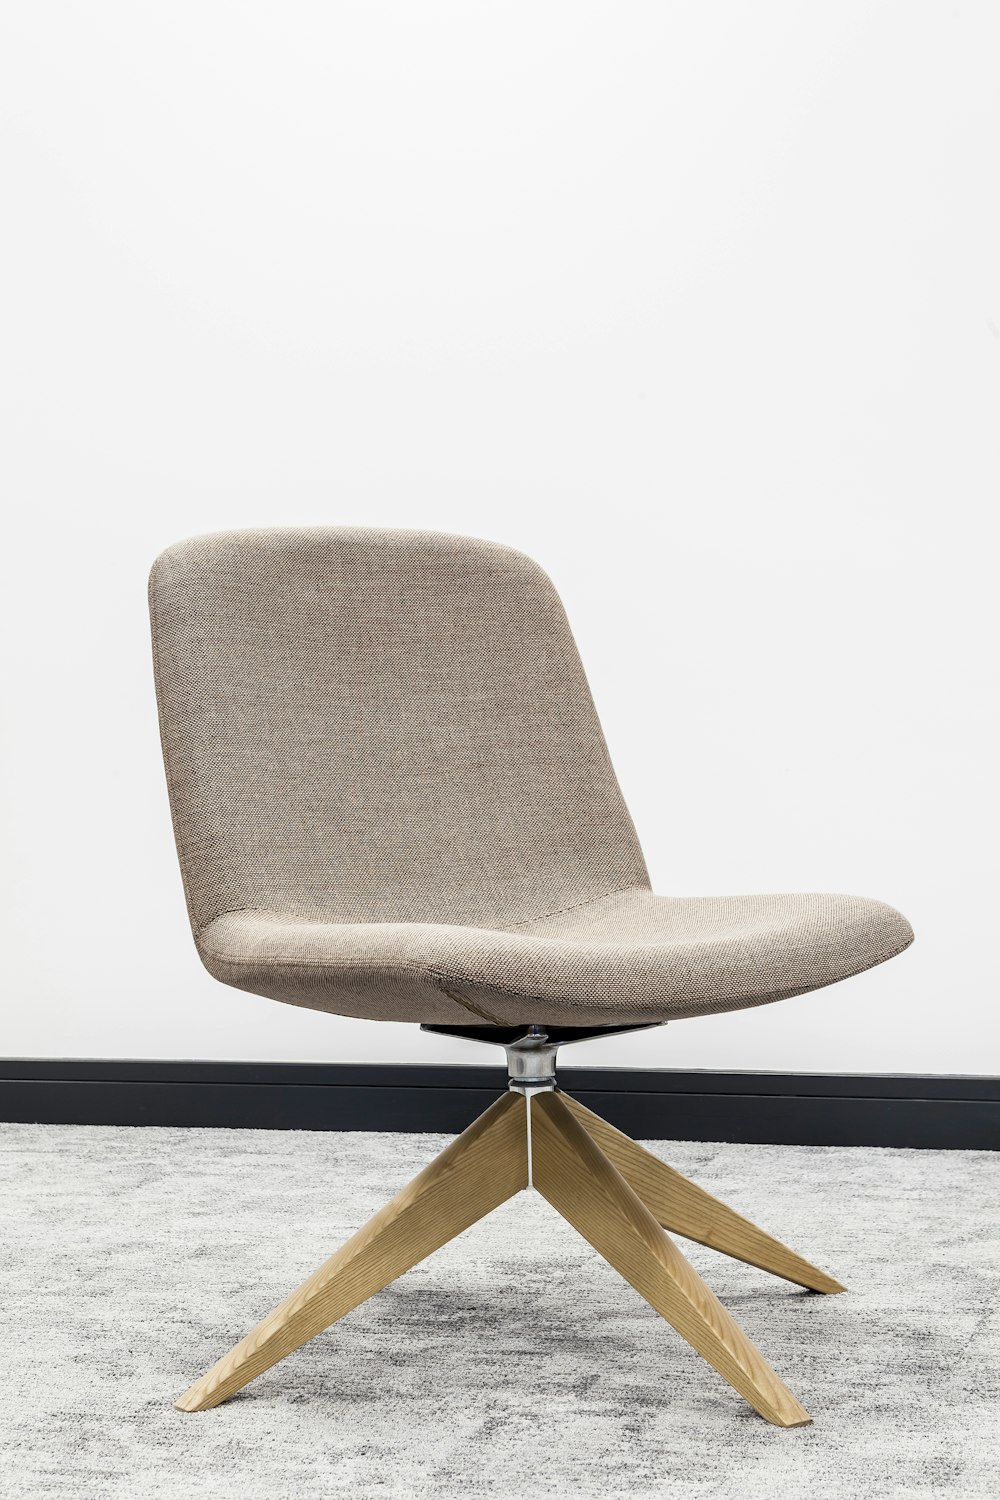 cadeira acolchoada cinza emoldurada de madeira marrom